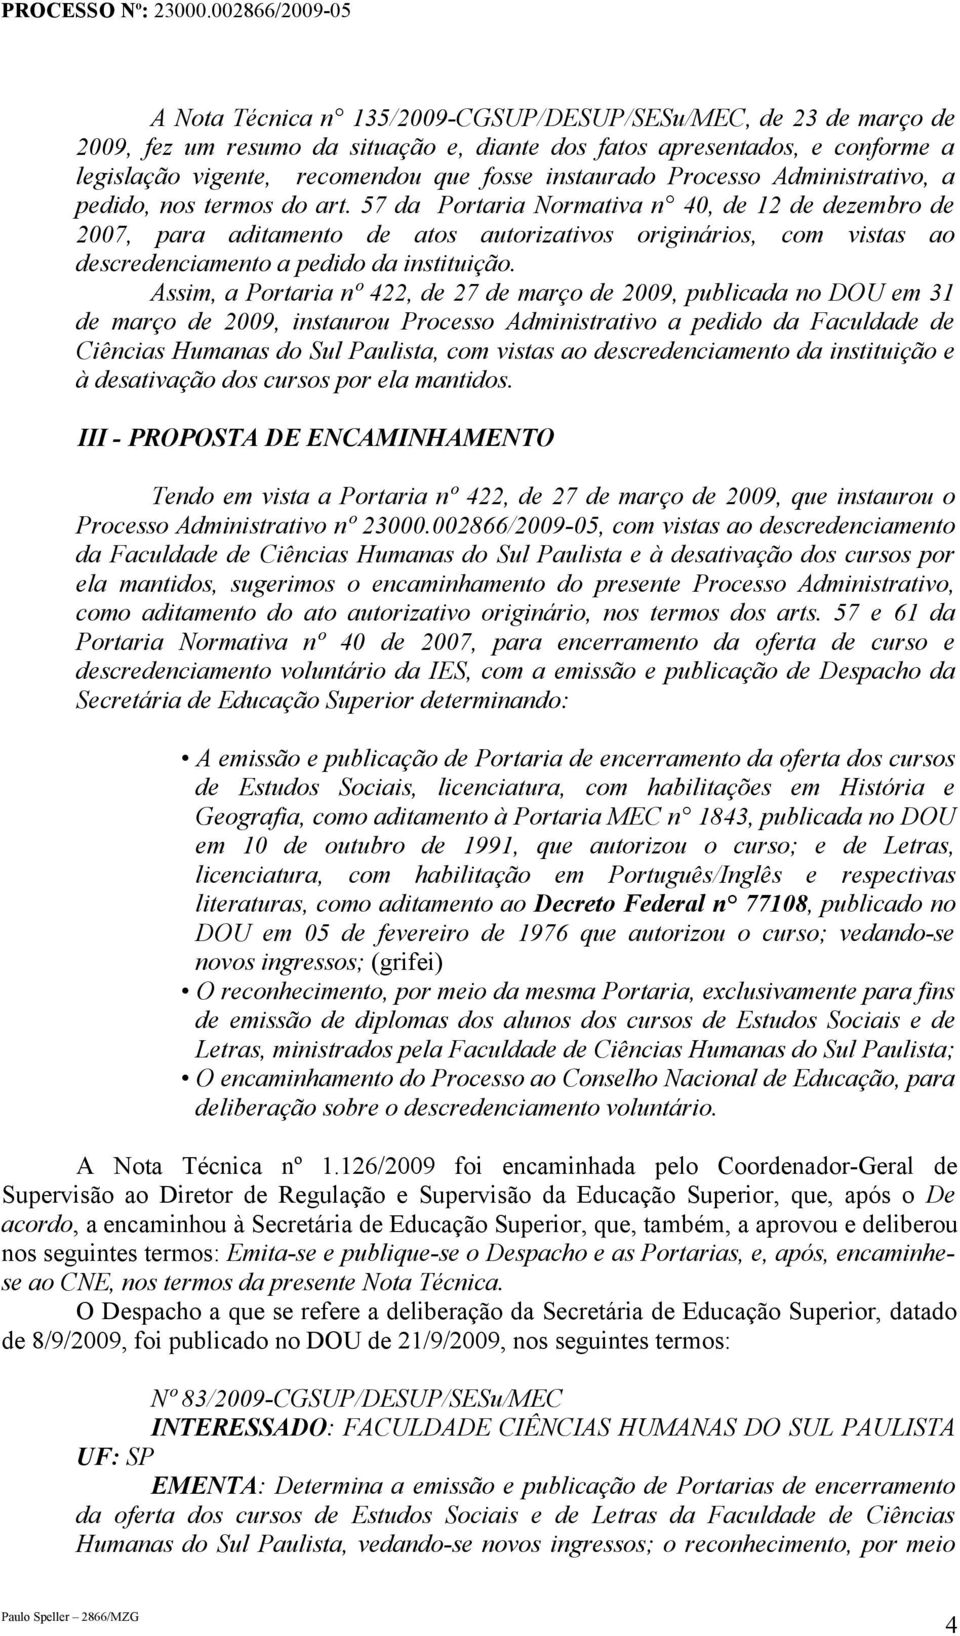 57 da Portaria Normativa n 40, de 12 de dezembro de 2007, para aditamento de atos autorizativos originários, com vistas ao descredenciamento a pedido da instituição.